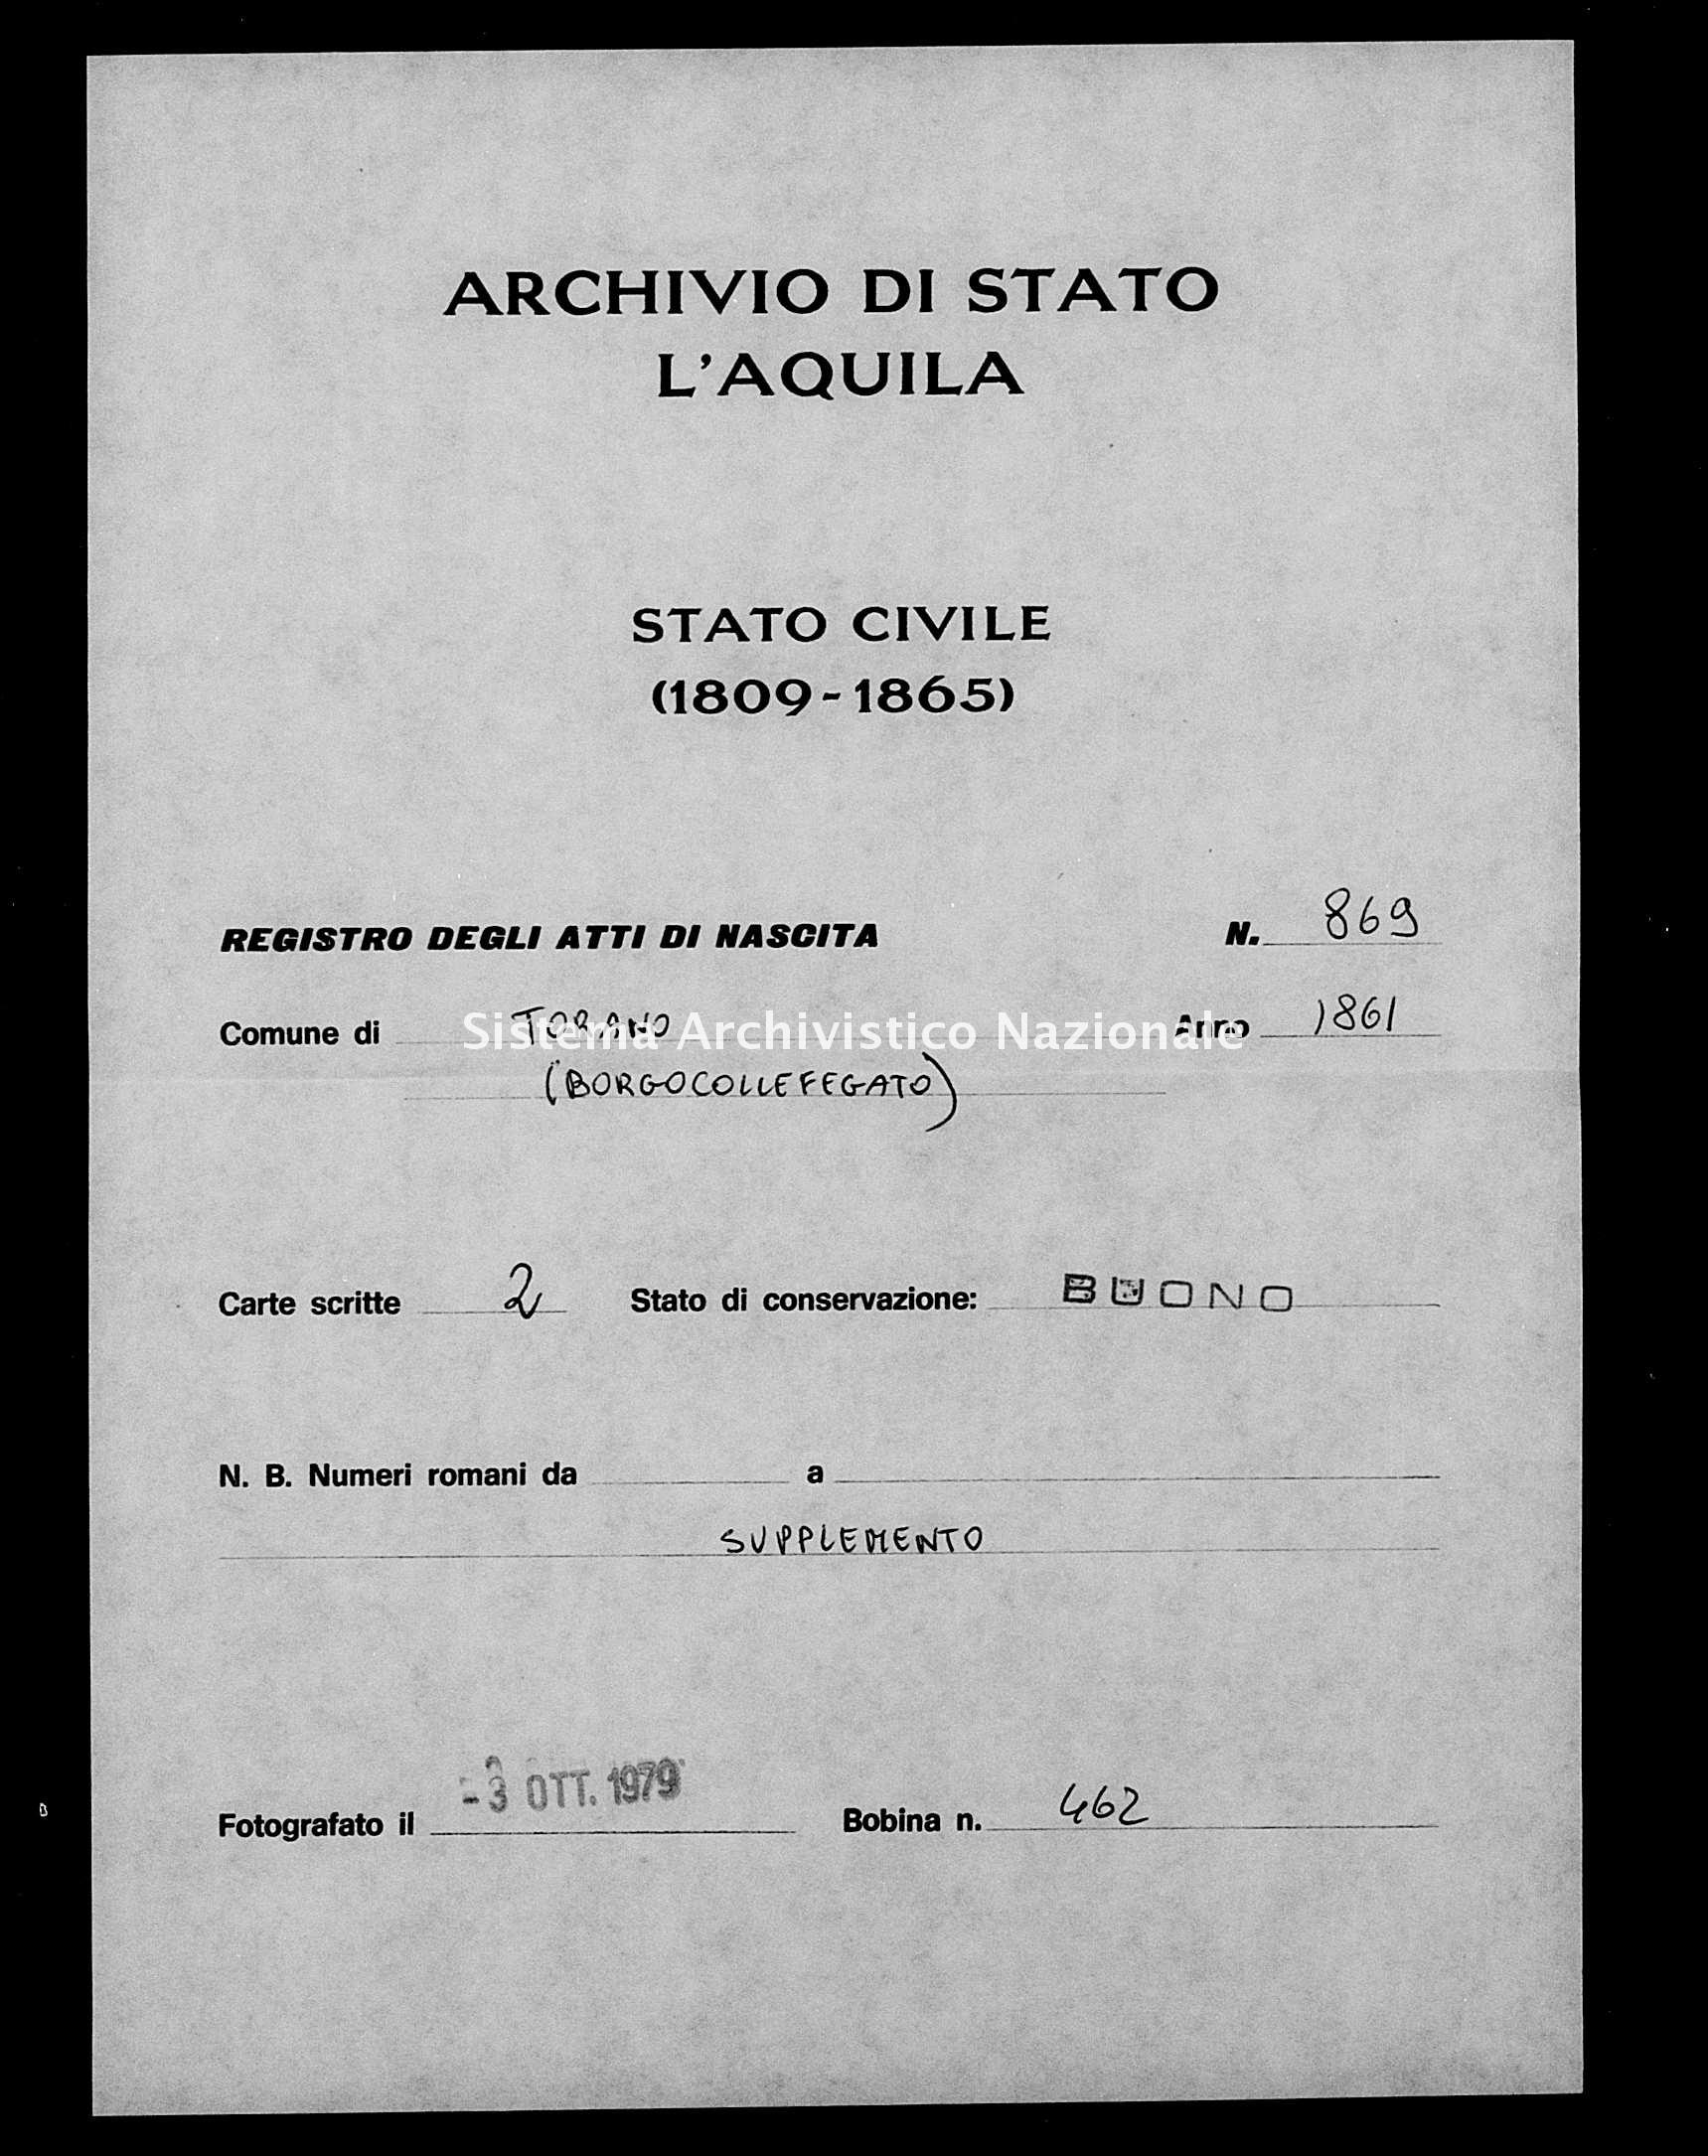 Archivio di stato di L'aquila - Stato civile italiano - Torano - Nati, esposti - 1861 - 869 -